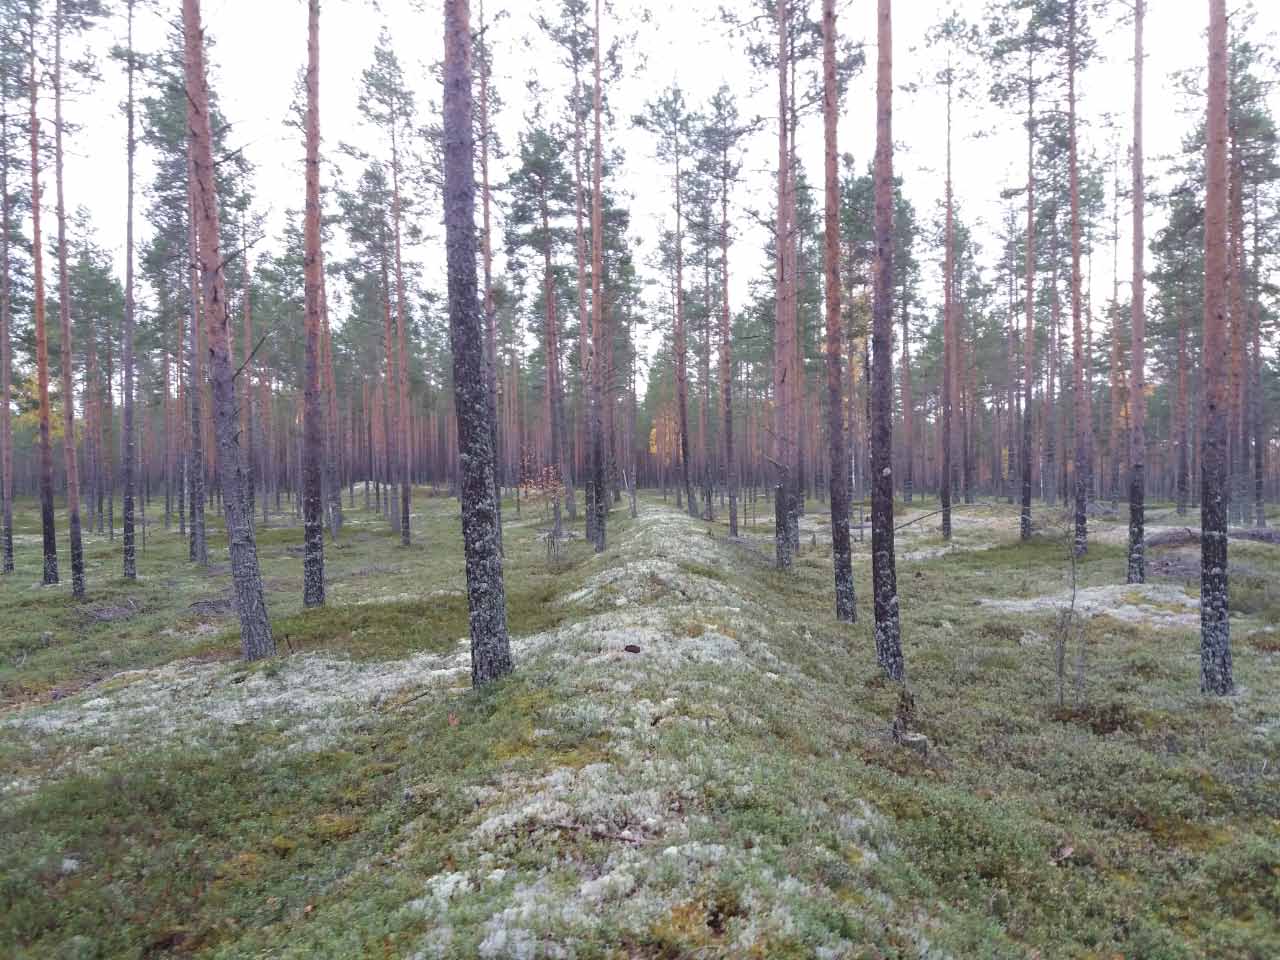 Kuva: Alueen eteläosassa olevaa vallia D pohjoisesta vuonna 2018. Pohjois-Pohjanmaan museo. CC BY 4.0 Mika Sarkkinen 9.9.2018